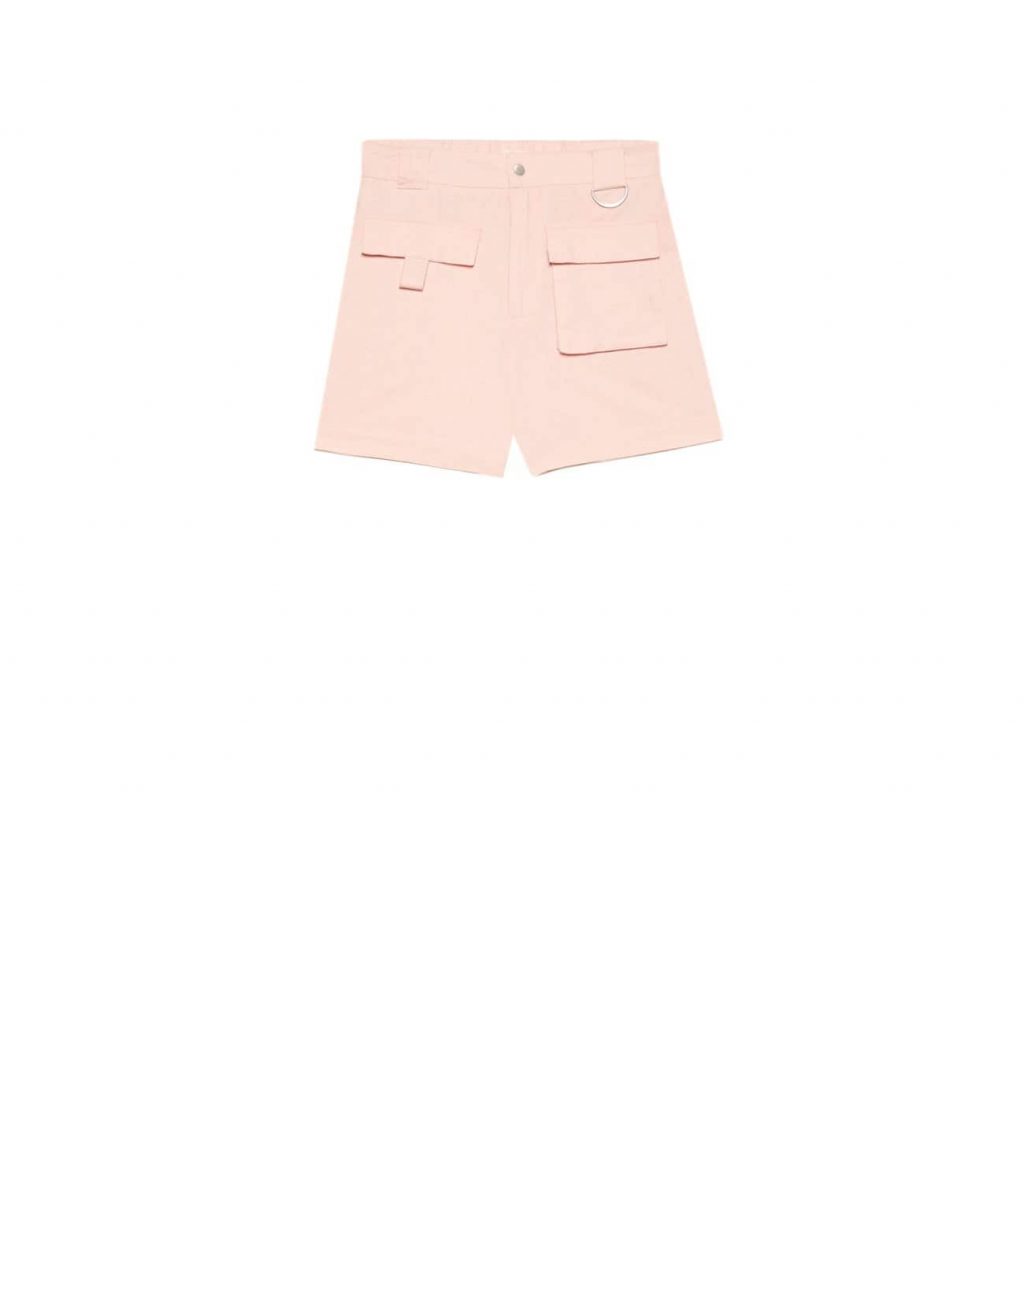 quần shorts màu hồng thời trang mùa Hè stradivarius